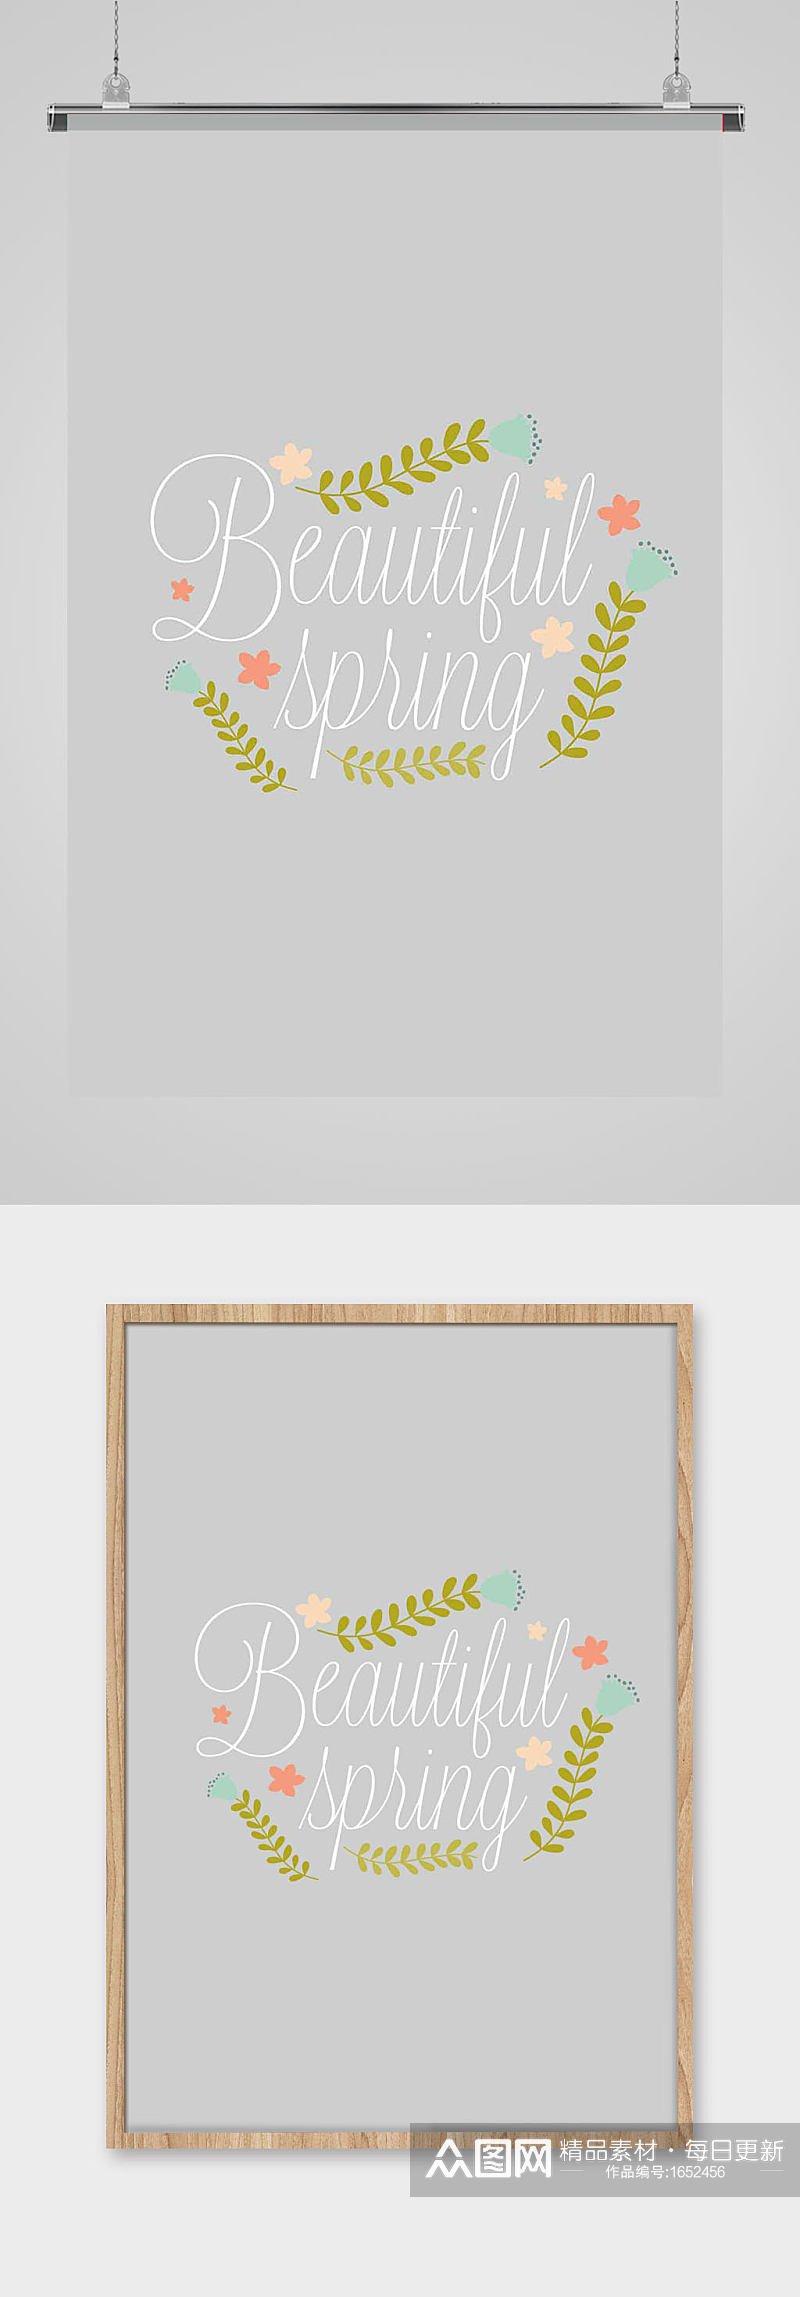 铃兰徽章英文字体设计排版植物花朵素材